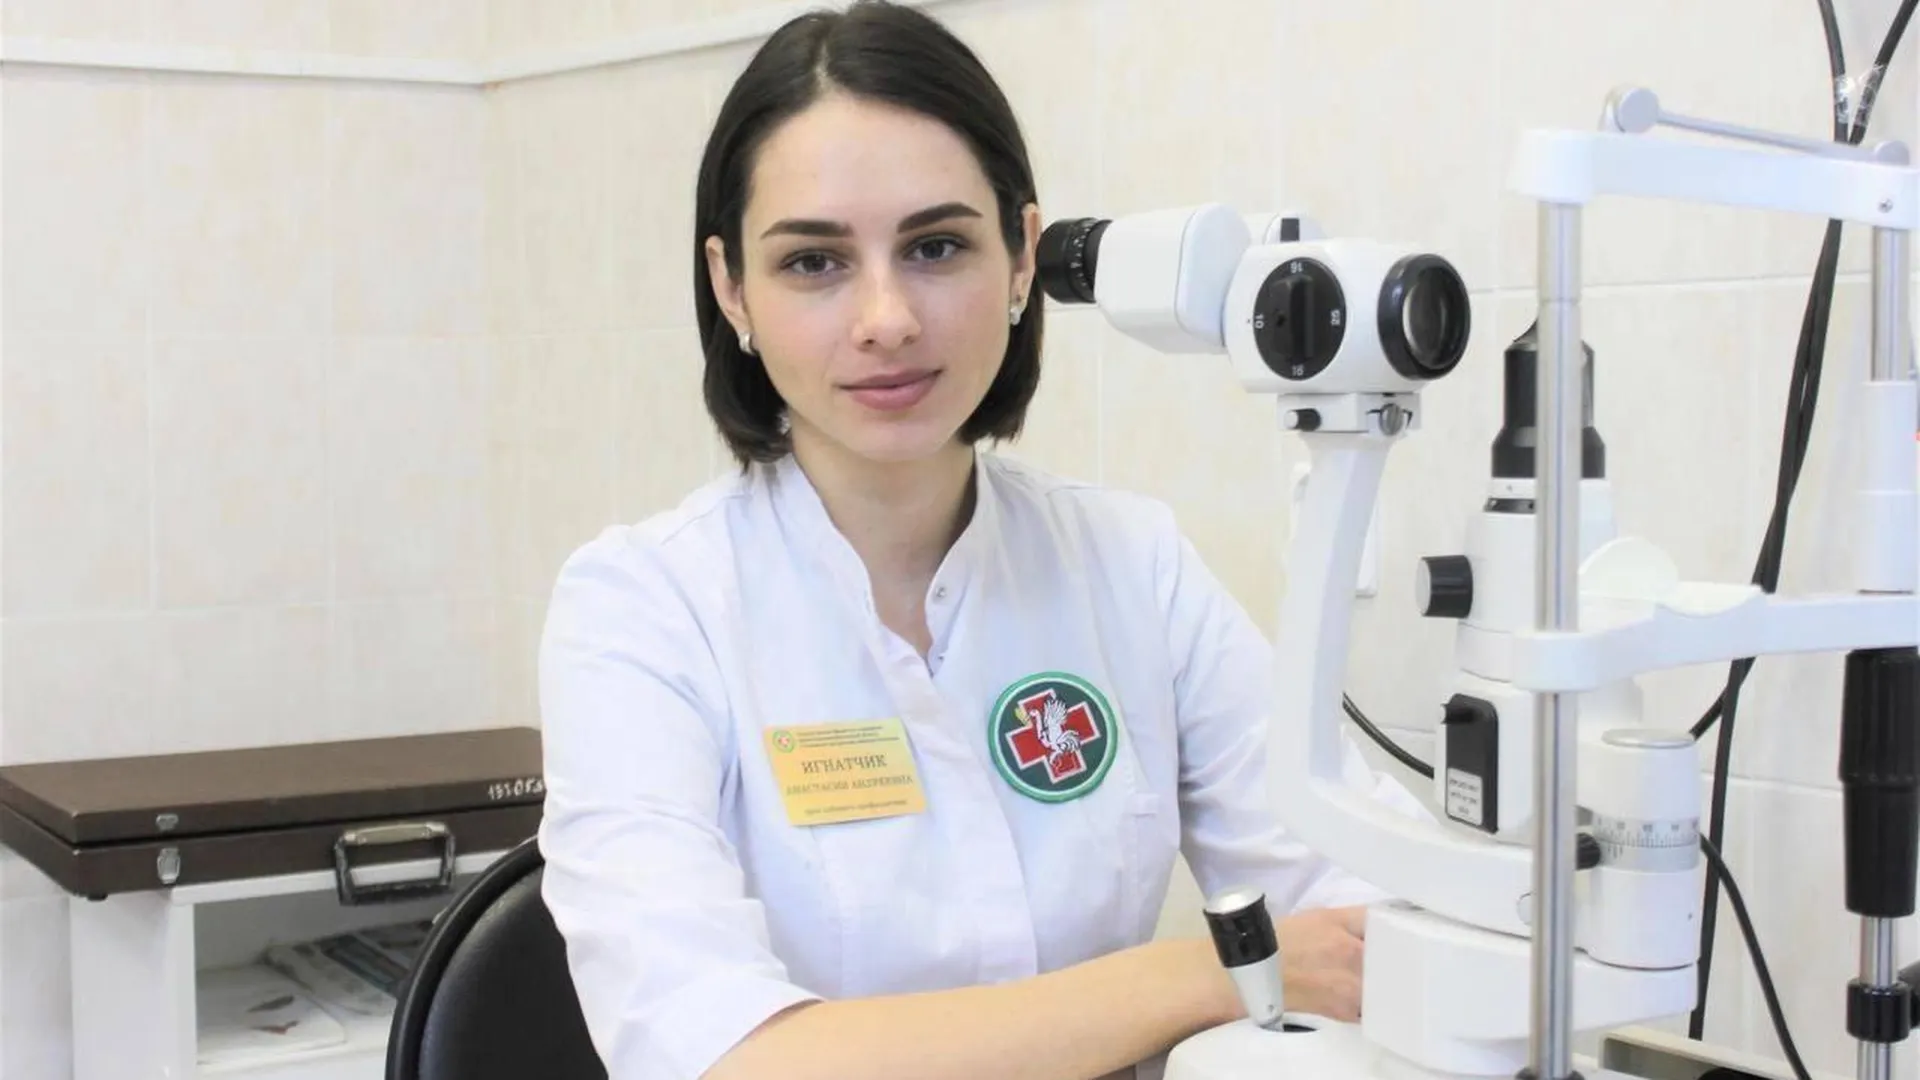 Офтальмолог из Белоруссии нашла в Талдомском округе новые возможности для развития